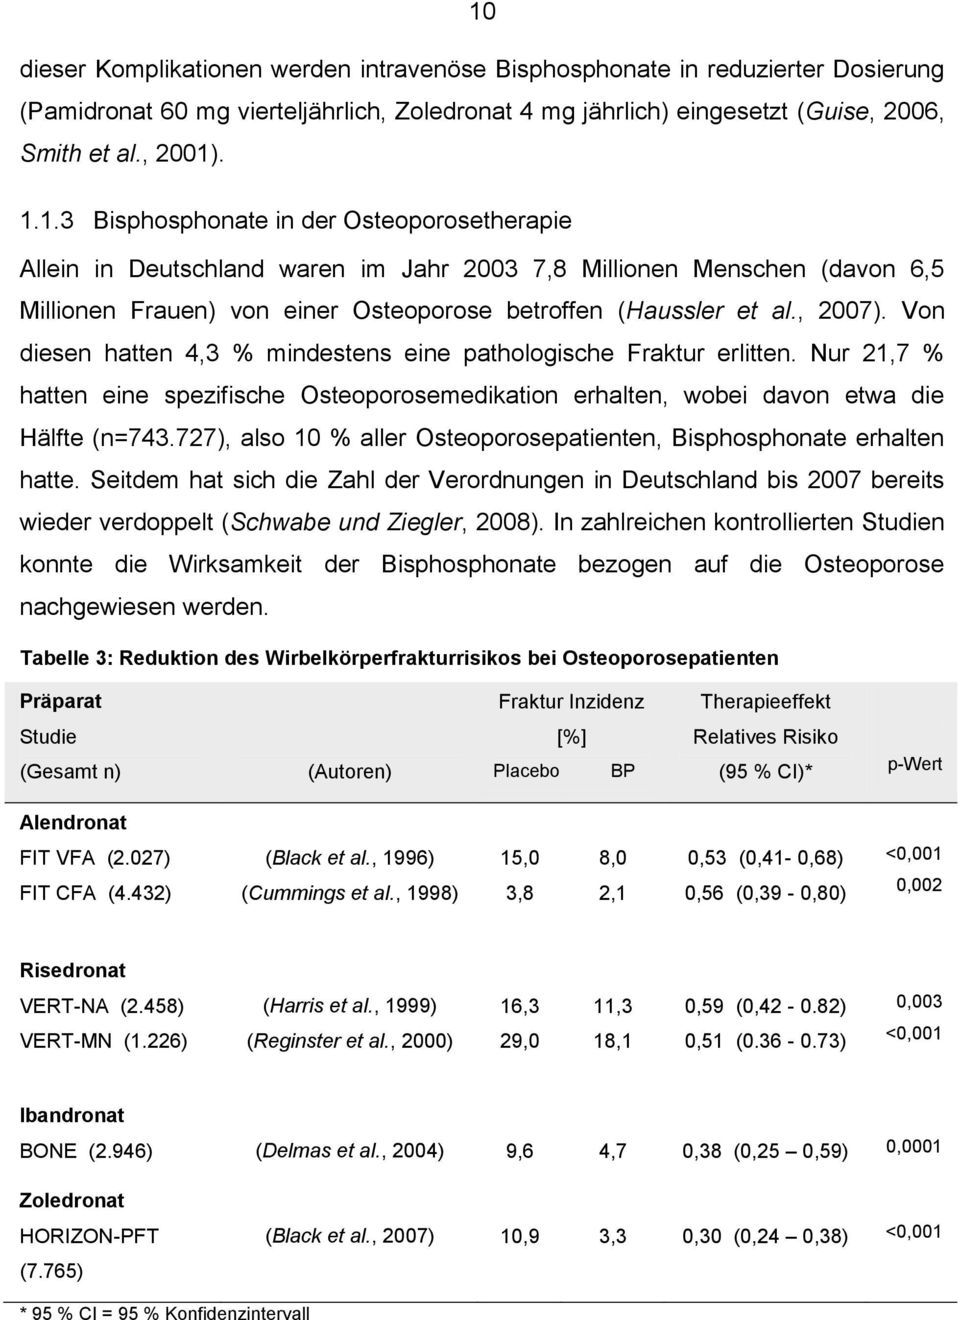 727), also 10 % aller Osteoporosepatienten, Bisphosphonate erhalten hatte. Seitdem hat sich die Zahl der Verordnungen in Deutschland bis 2007 bereits wieder verdoppelt (Schwabe und Ziegler, 2008).